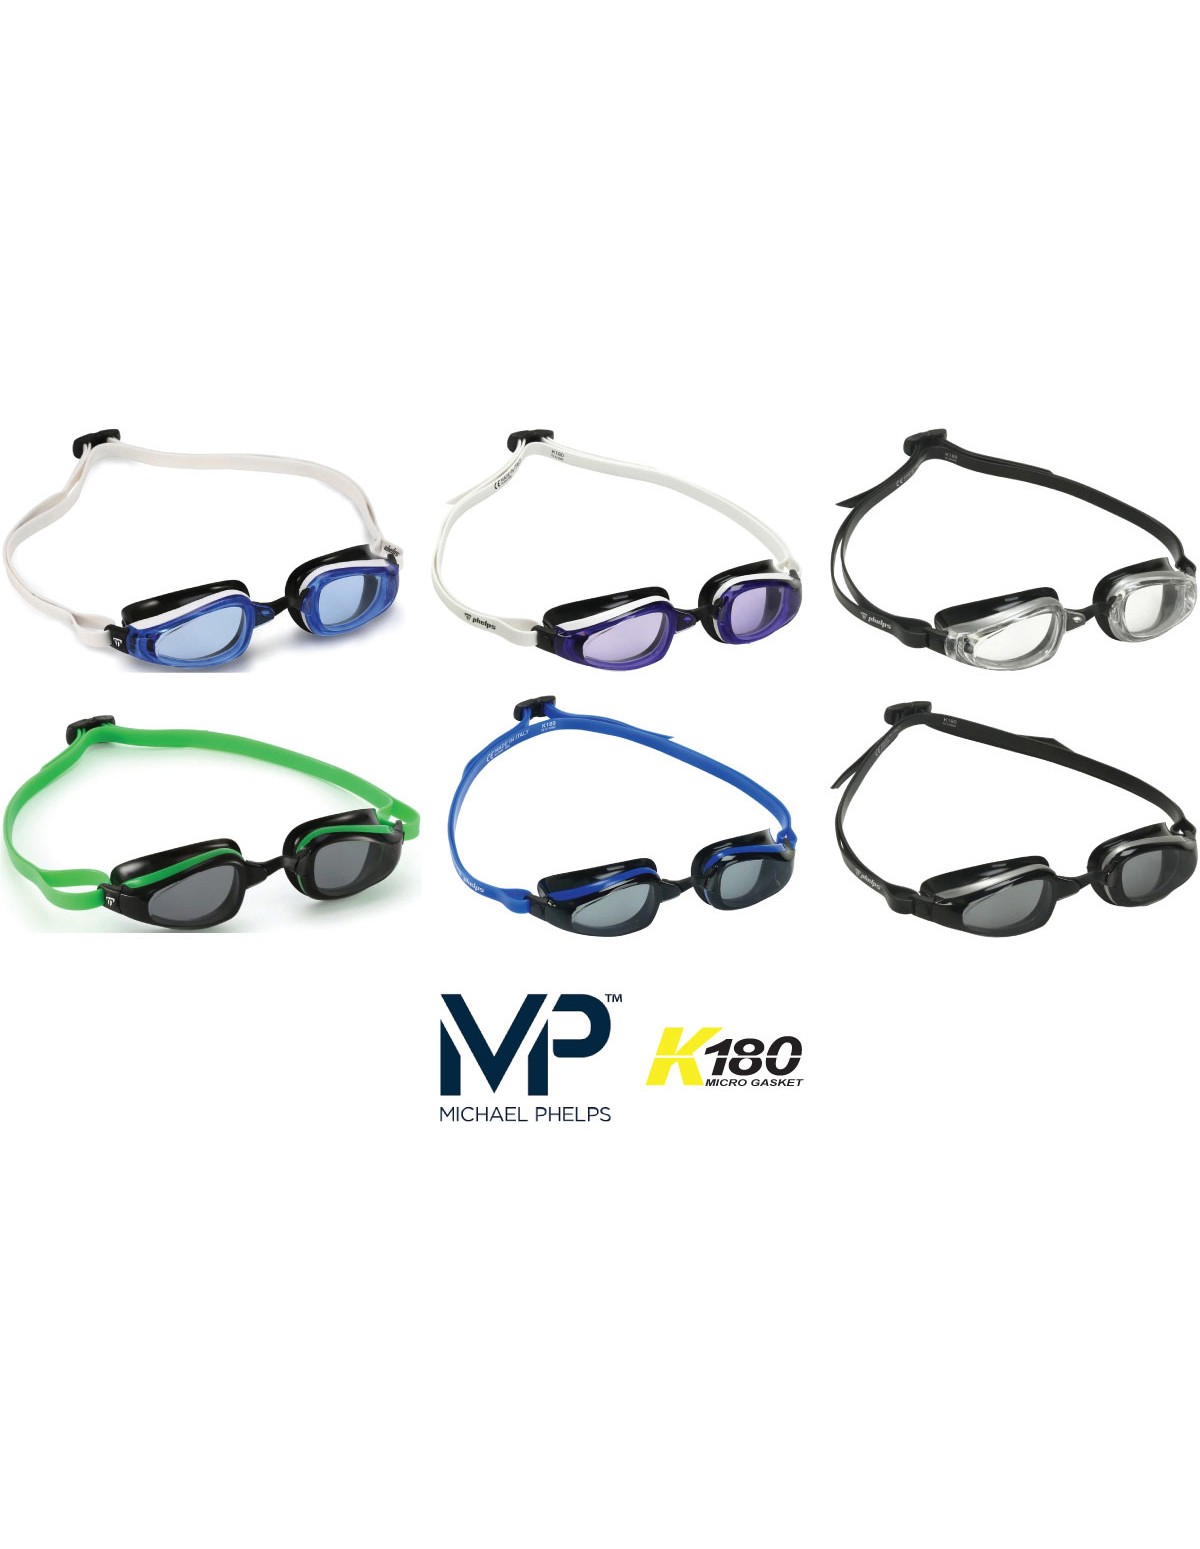 MP Michael Phelps K180 occhialini da Nuoto Lenti a Specchio Blu/Bianco 